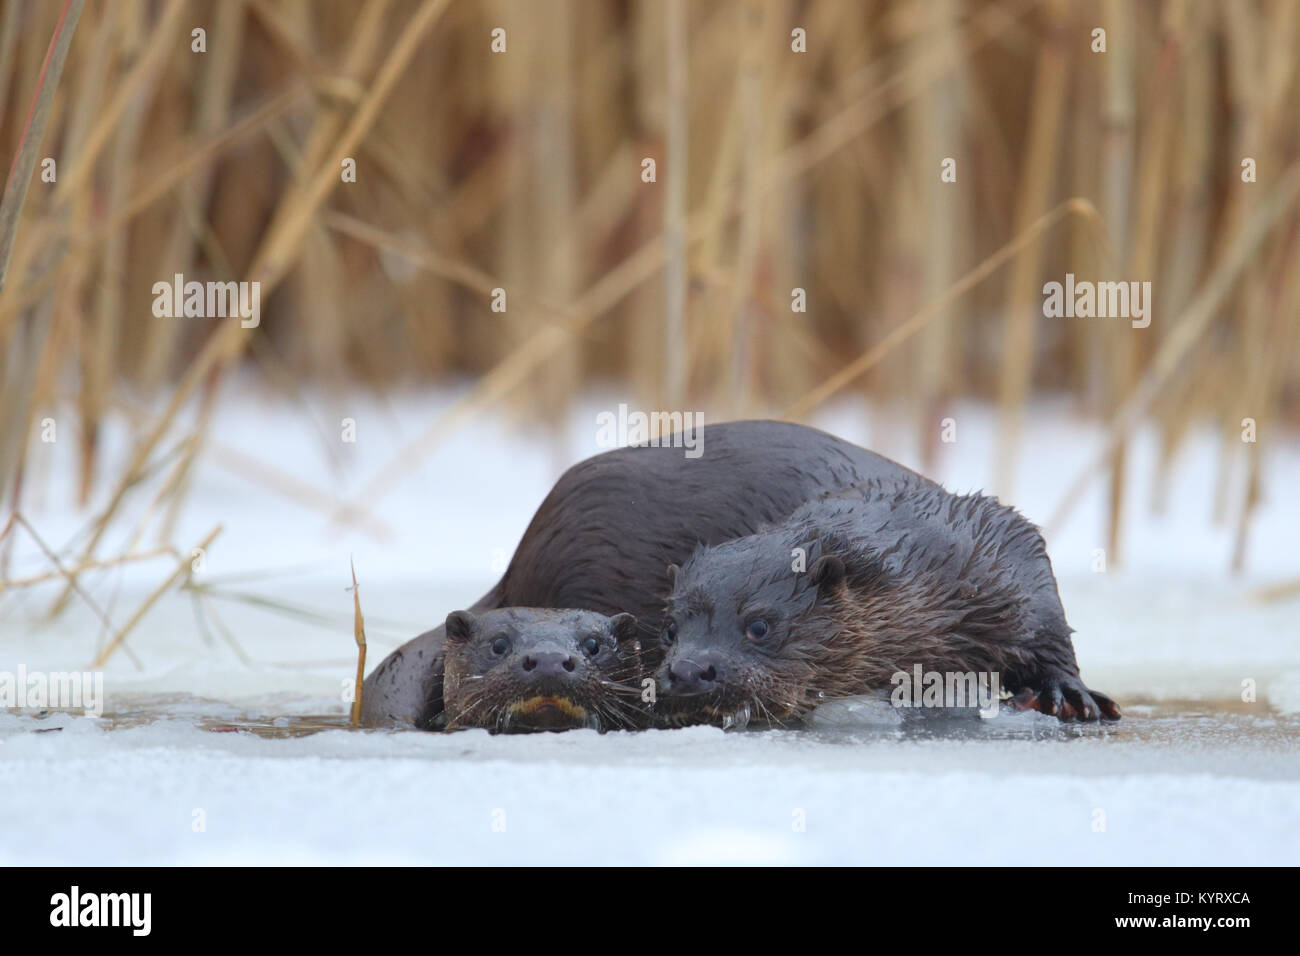 Wild European otters (Lutra lutra), Europe Stock Photo